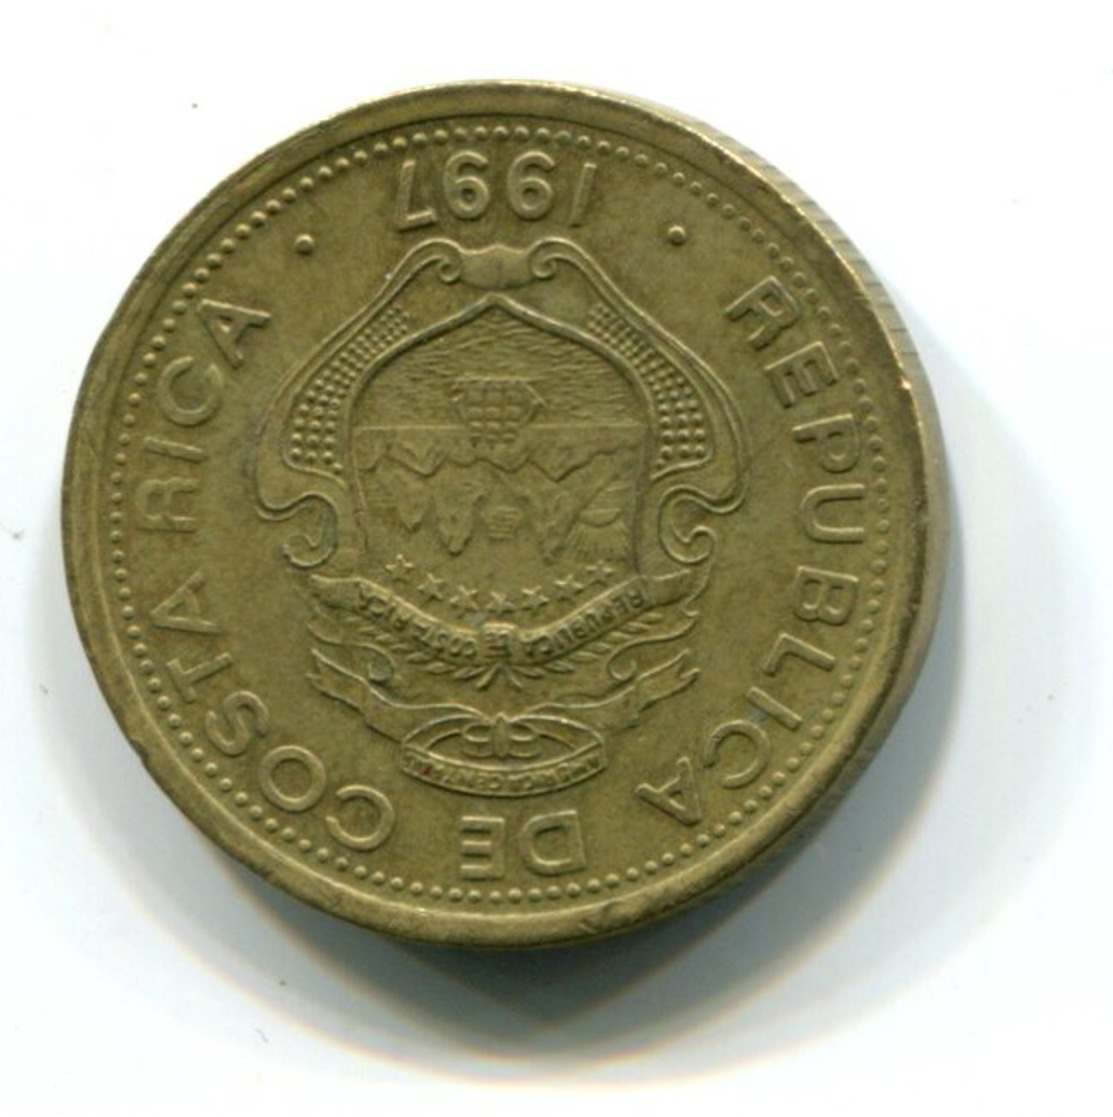 1997 Costa Rica 5 Colones Coin - Costa Rica